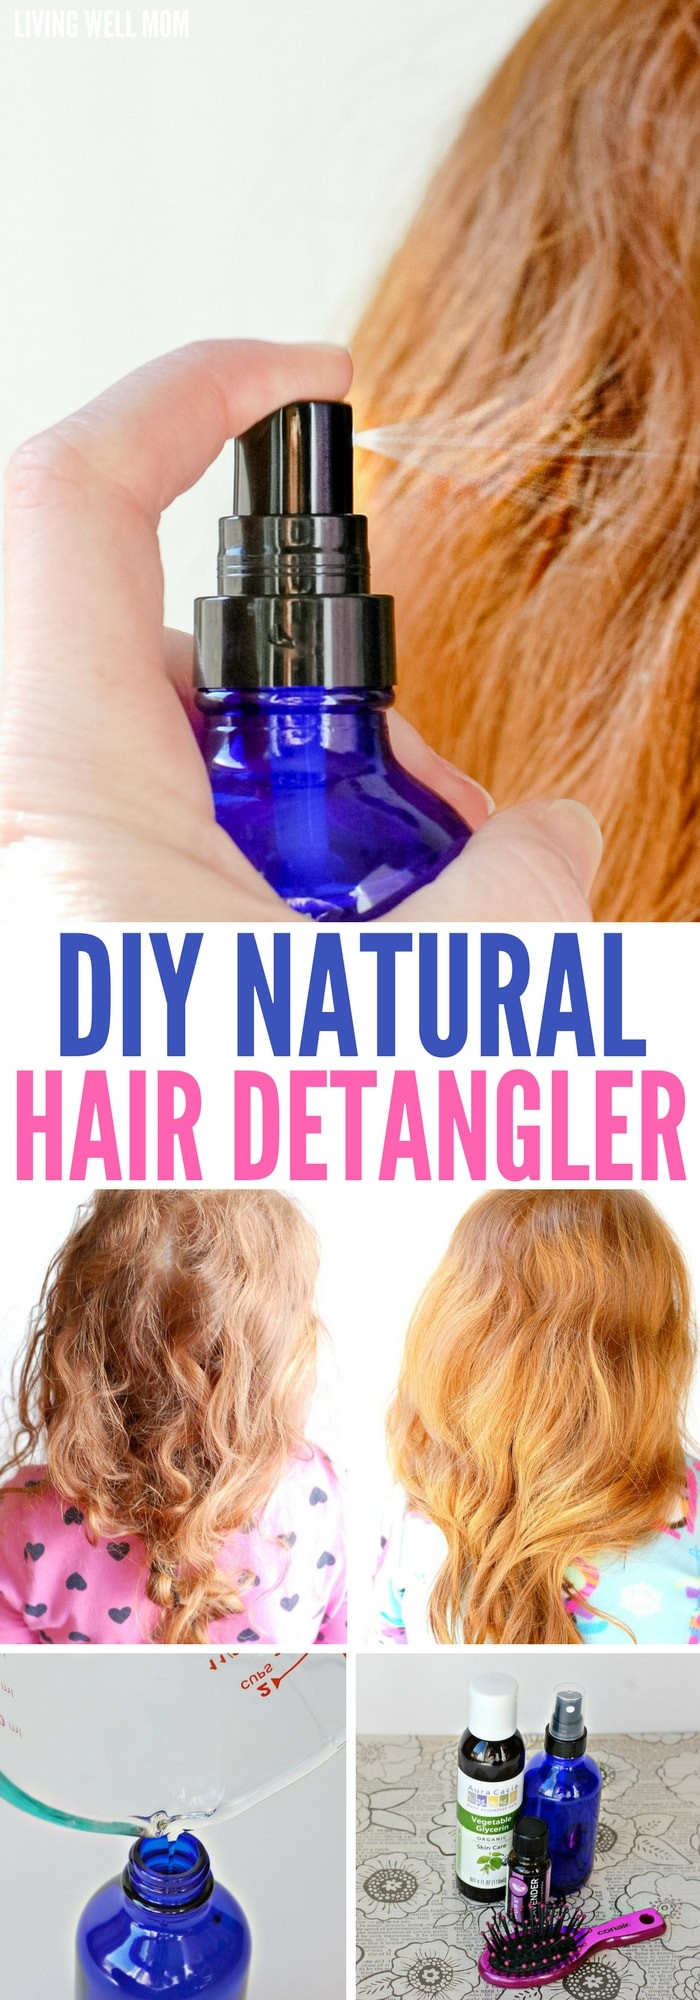 DIY Natural Hair
 DIY Natural Hair Detangler with Essential Oils